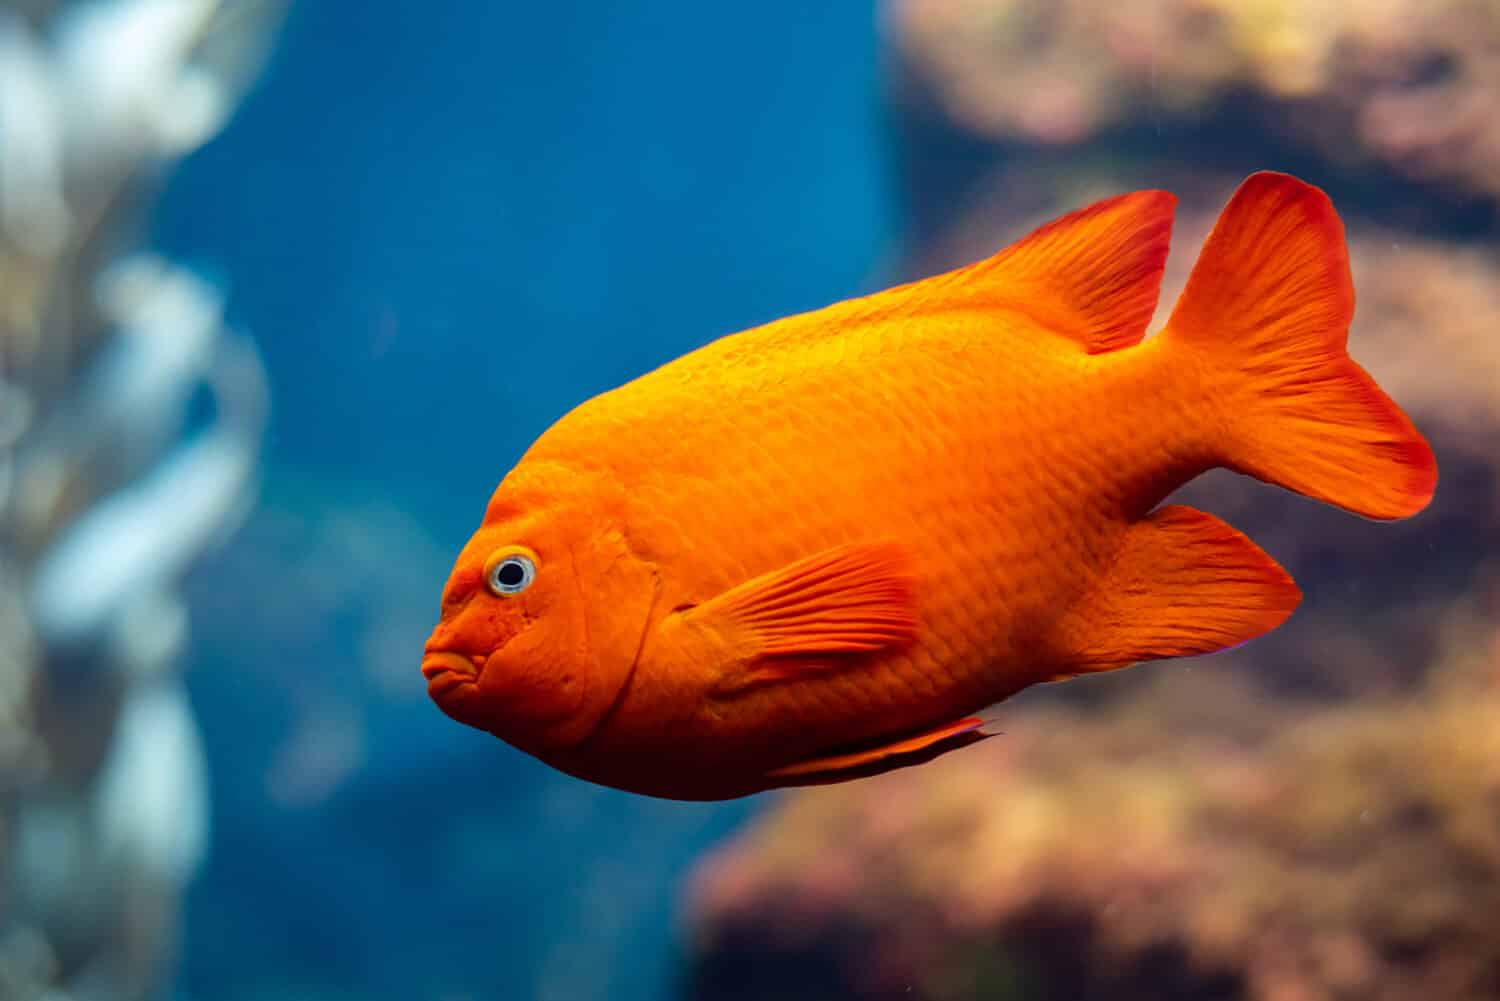 I pesci garibaldini (Hypsypops rubicundus), un tipo di castagnole di colore arancione brillante, sono i pesci marini ufficiali della California e sono protetti nelle acque locali.  Sono numerosi sull'isola di Santa Catalina.